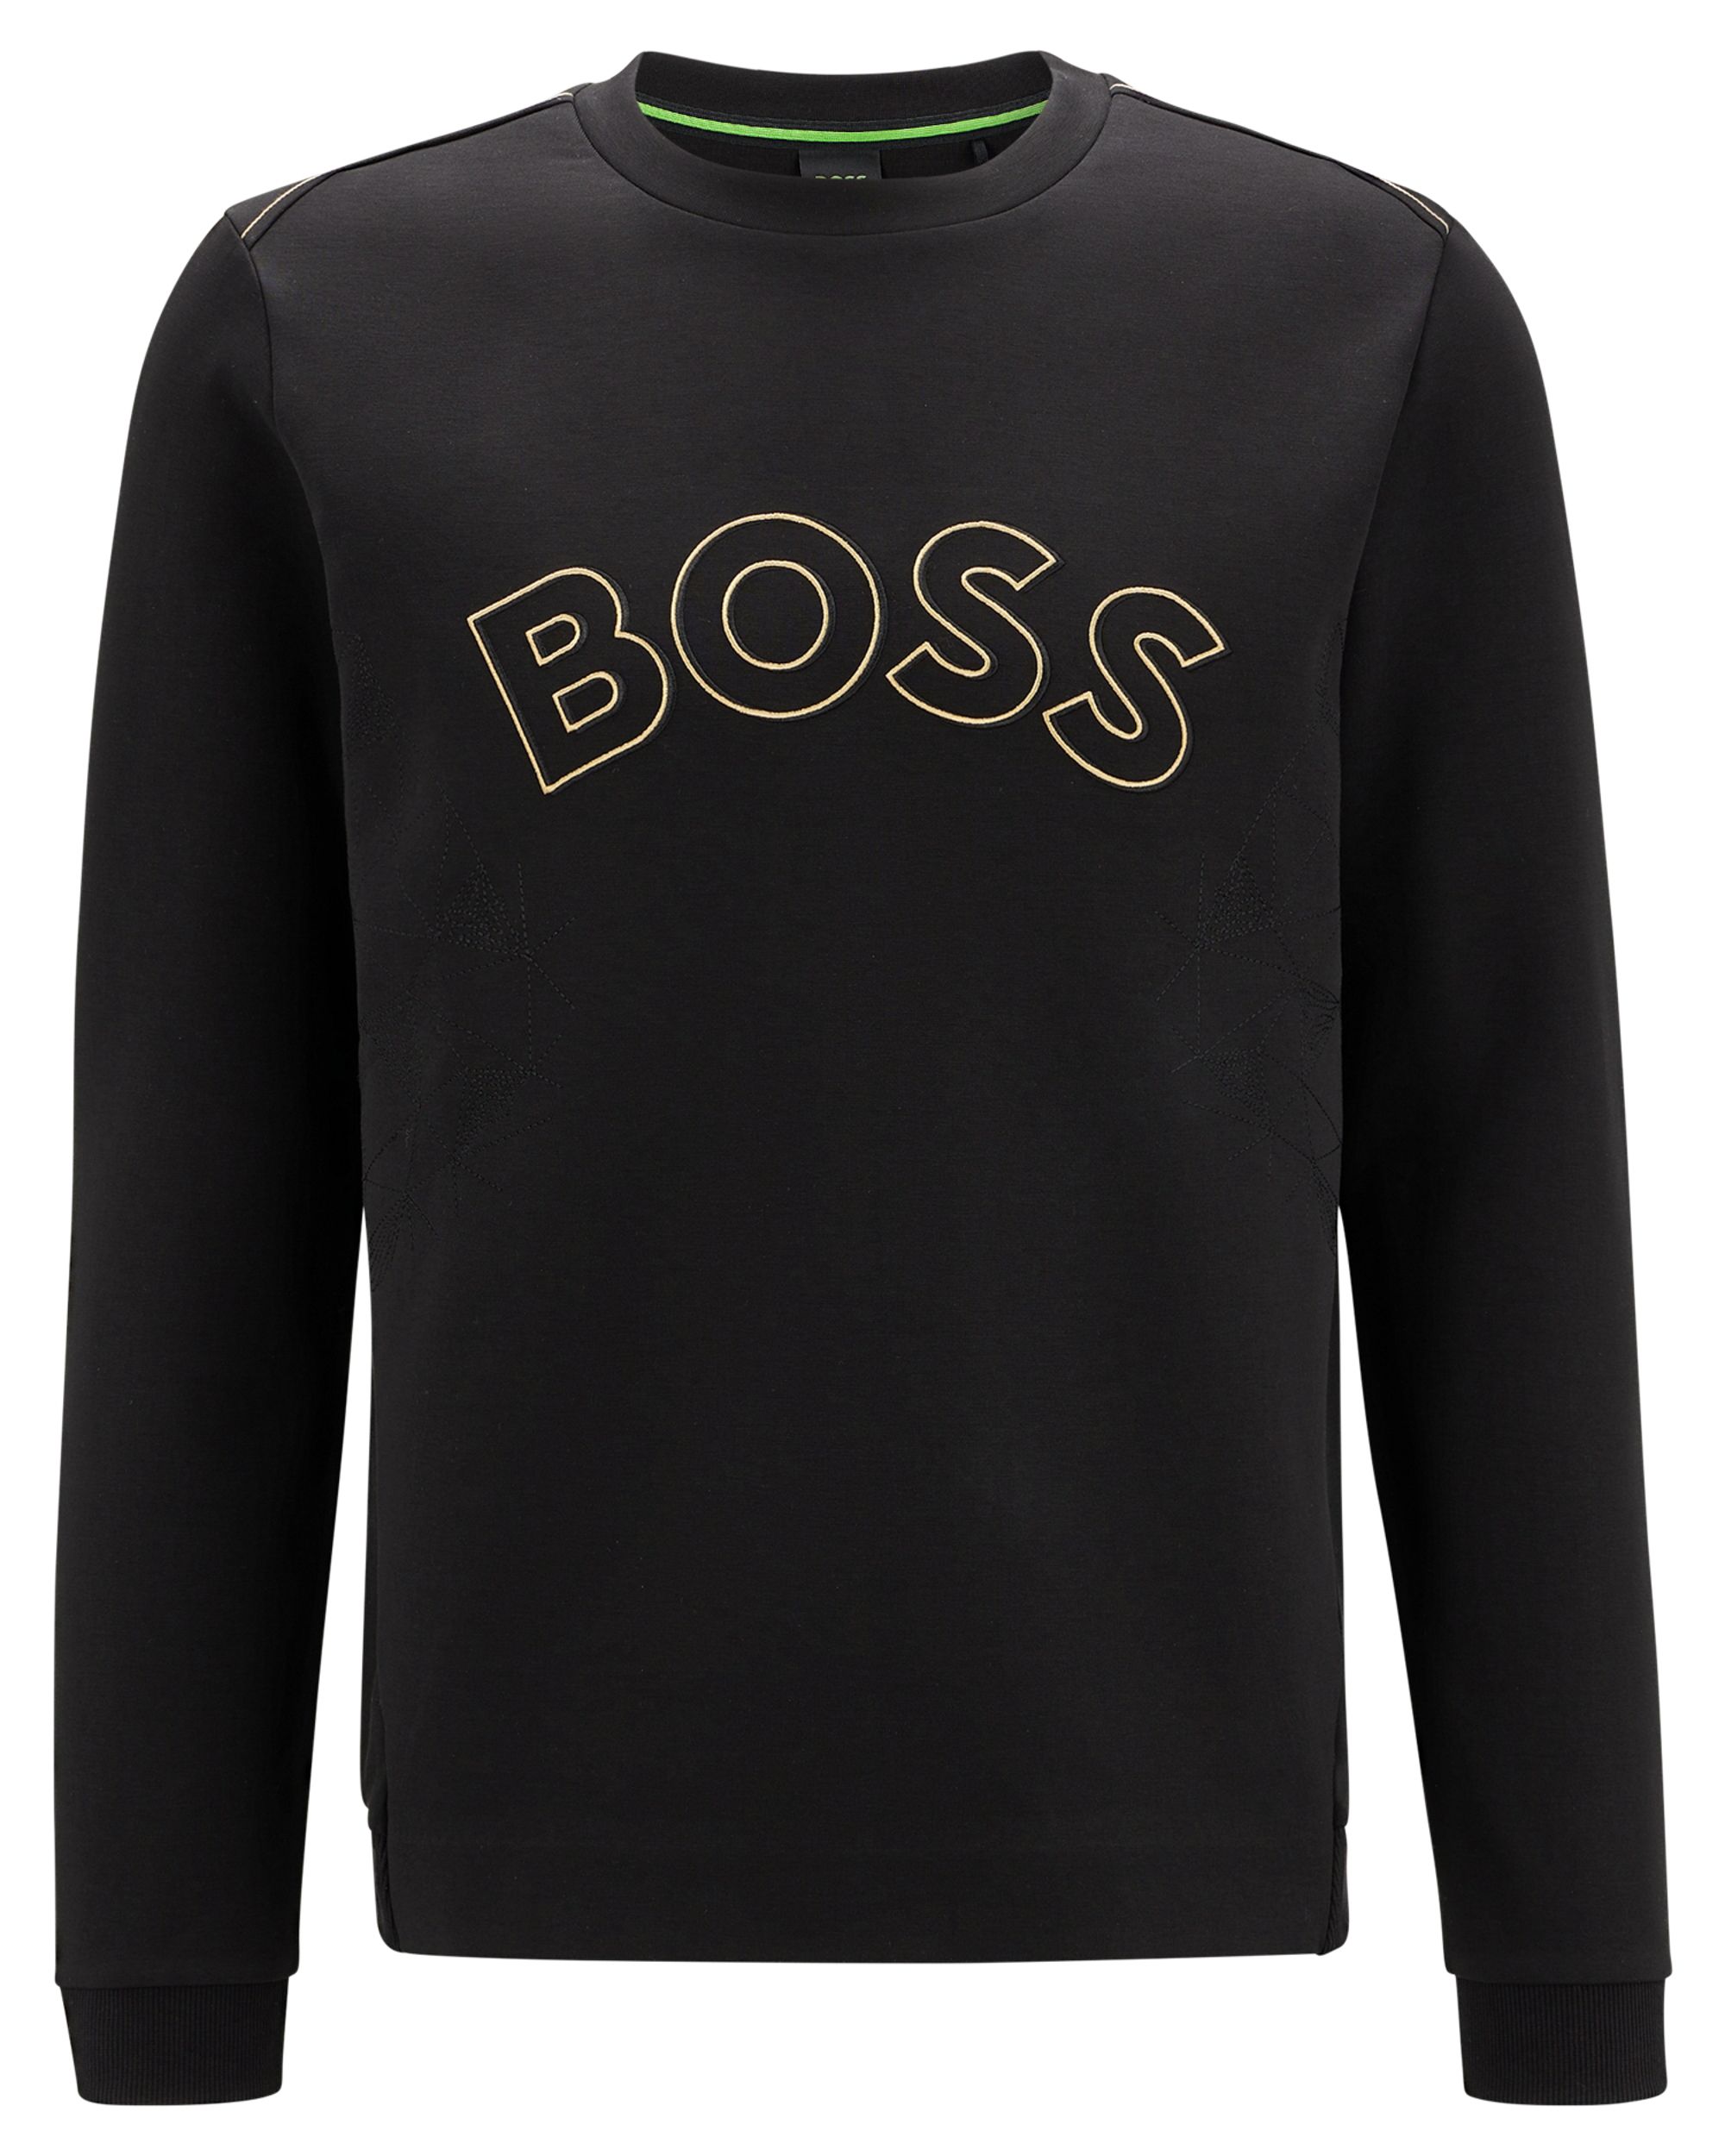 Hugo Boss Leisure Salbo Iconic Sweater Zwart 082292-001-L